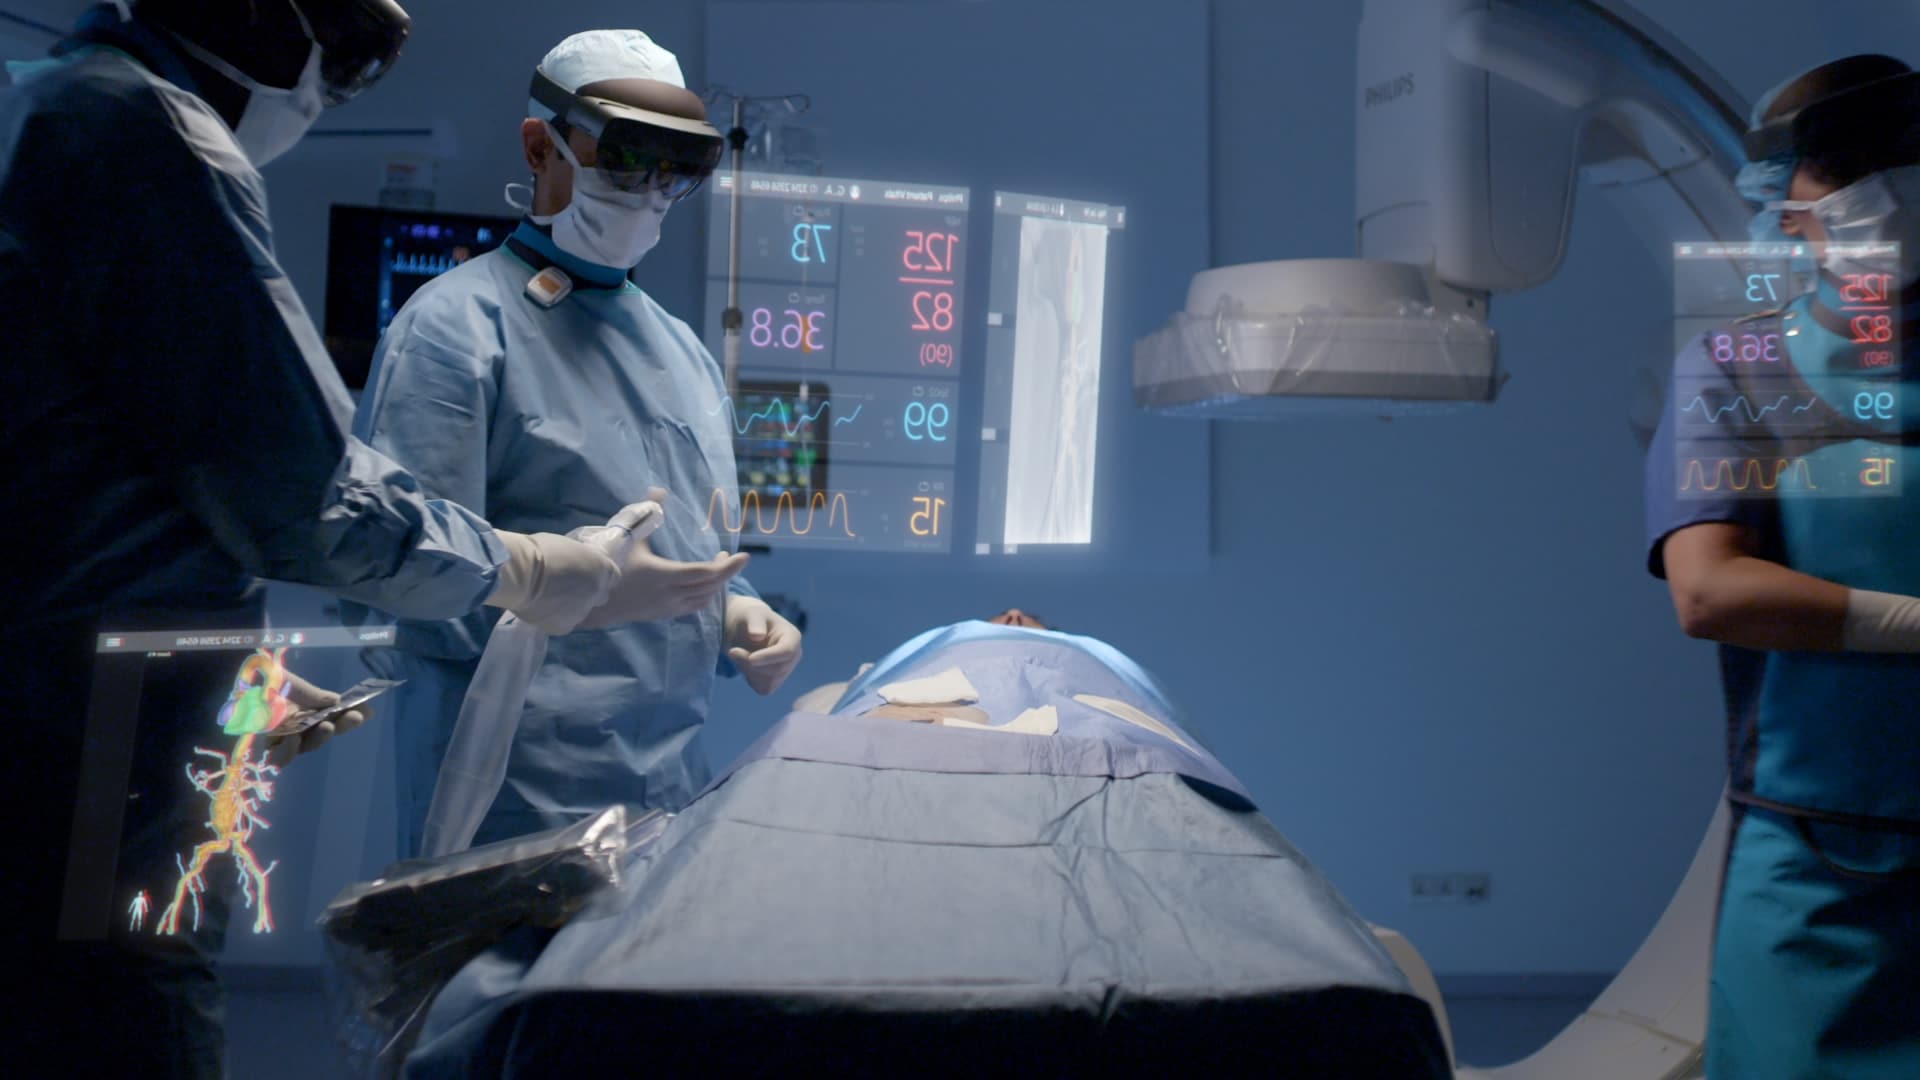 Le concept unique de réalité augmentée de Philips pour les thérapies mini-invasives guidées par l'image développé avec Microsoft